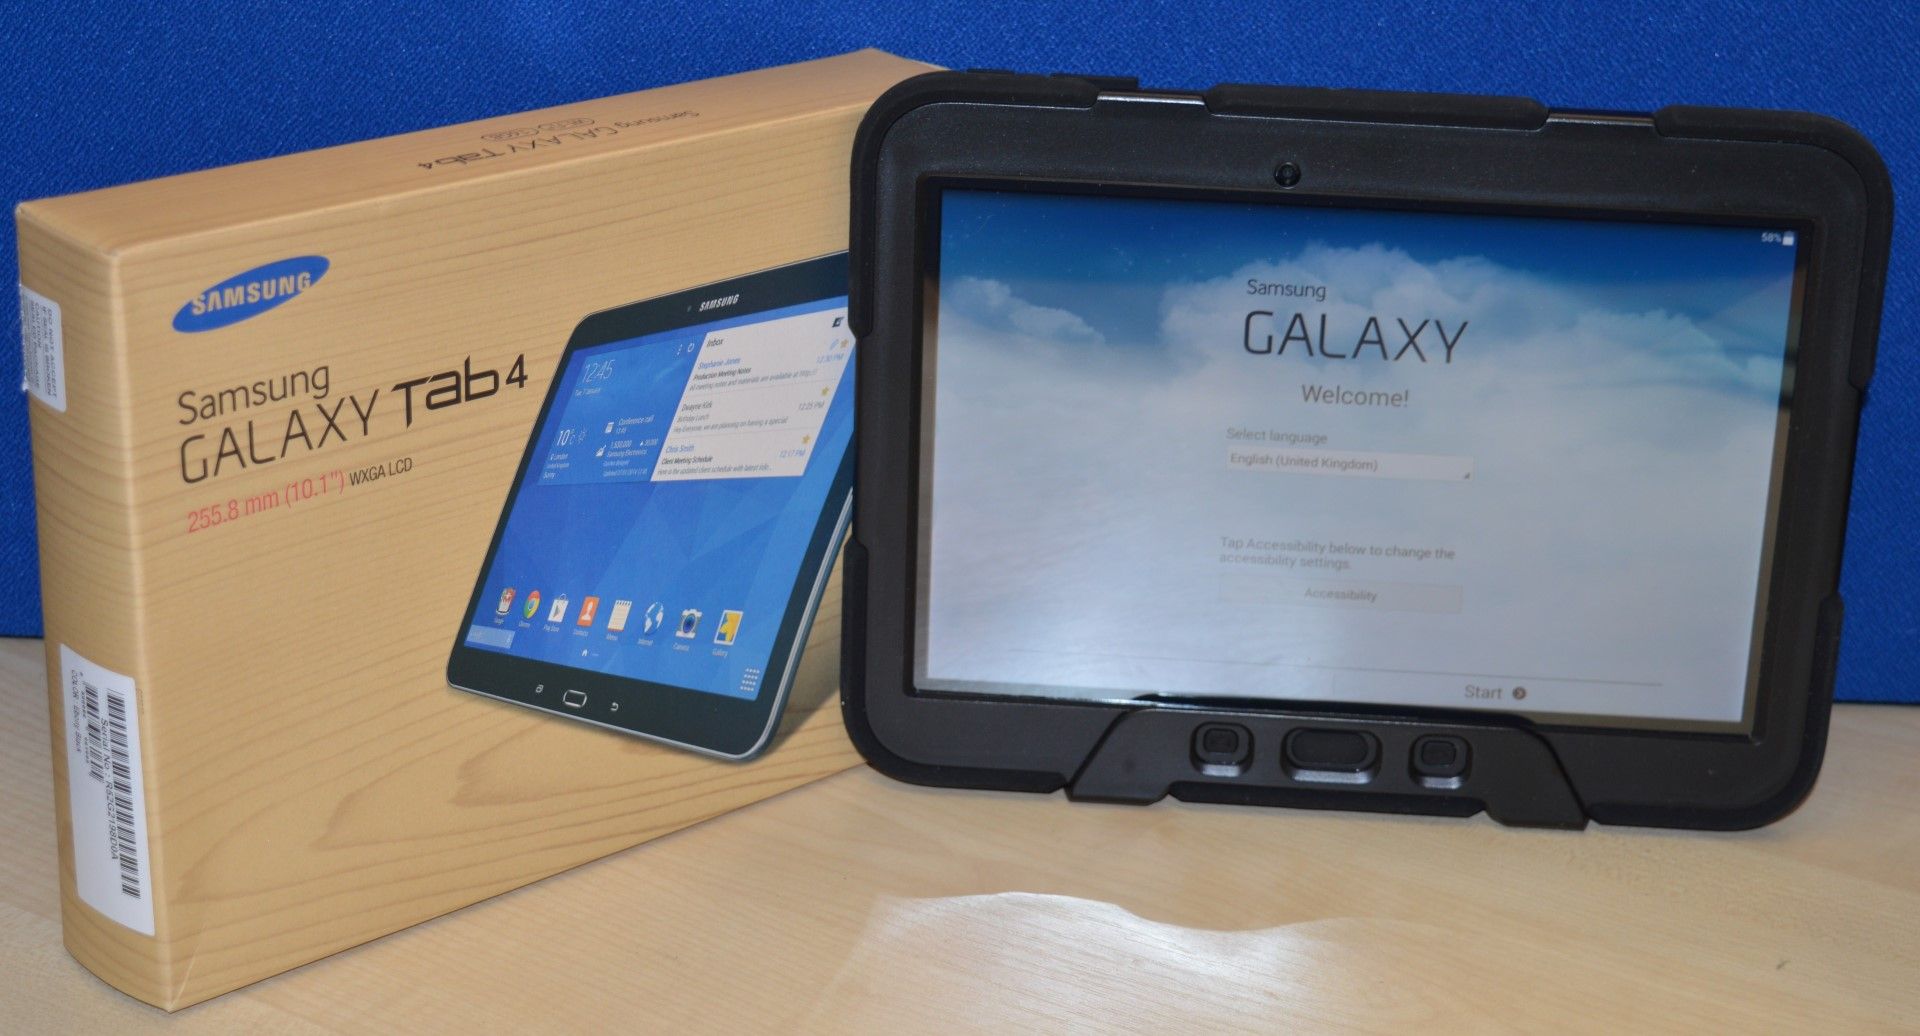 1 x Samsung Galaxy Tab 4 - Model SM-T530 - Features 10.1 Inch LCD Screen, 1.2ghz 1.5gb Ram, 16gb Rom